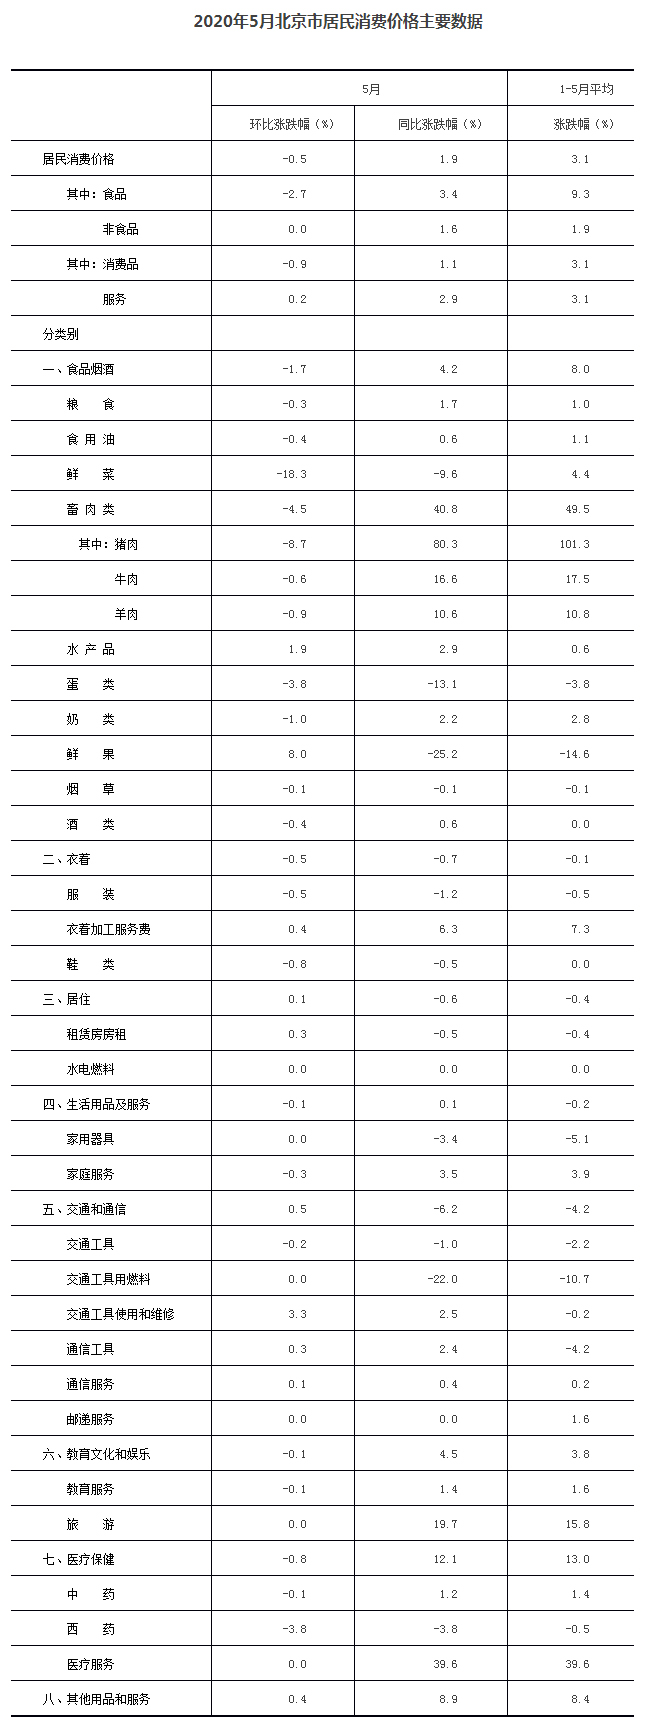 2020年5月北京市居民消費價格主要數據